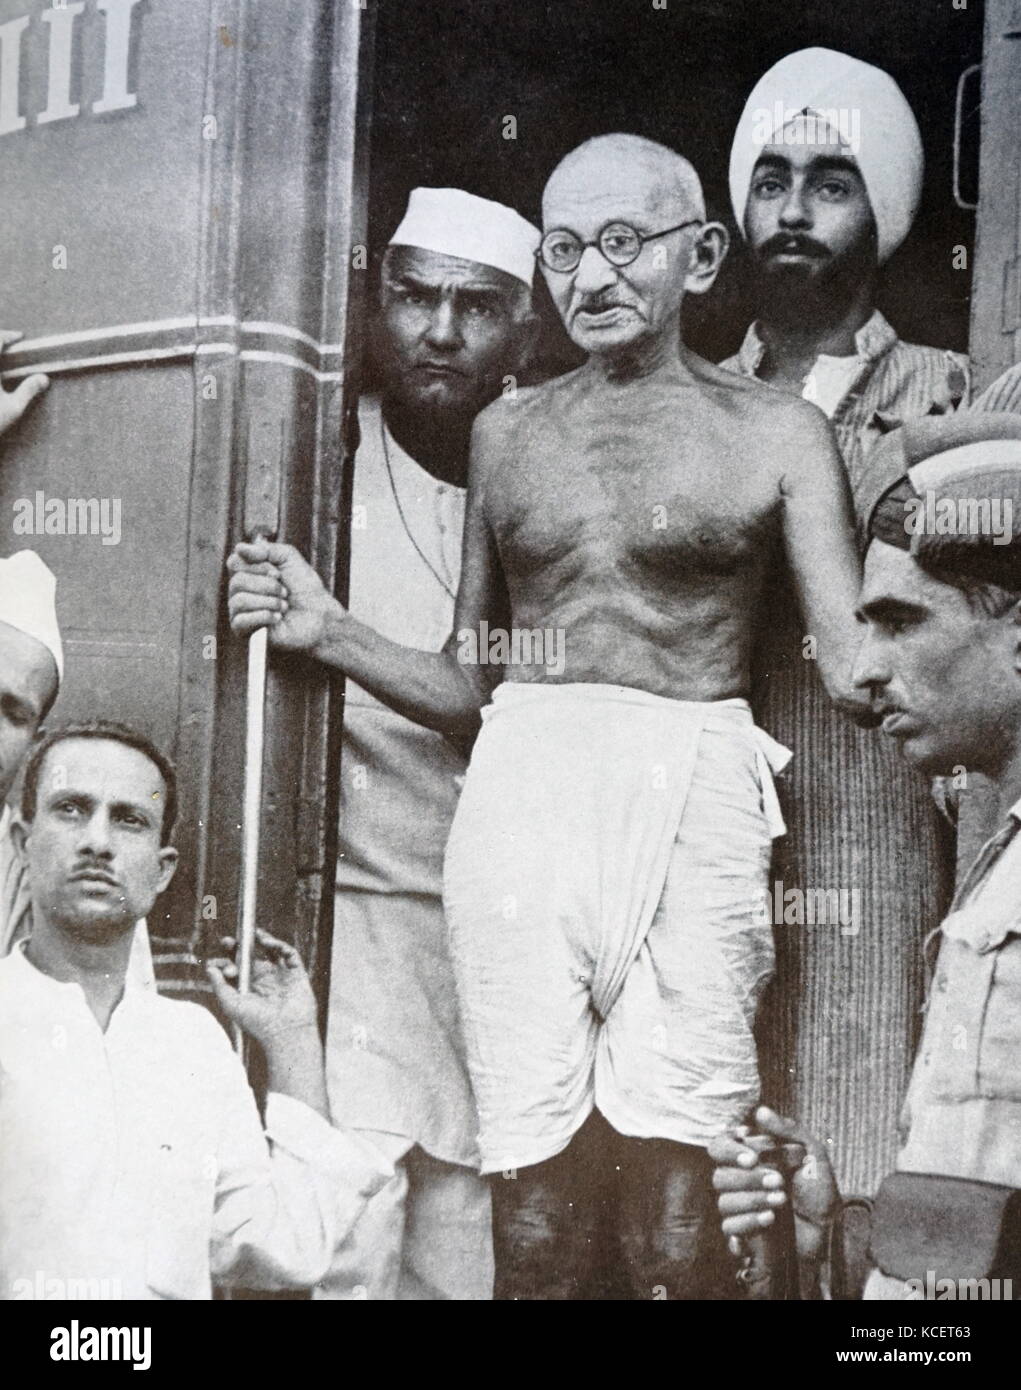 Gandhi 1947 visites Lahore. Mohandas Karamchand Gandhi (2 octobre 1869 - 30 janvier 1948), était le principal leader de l'indépendance de l'Inde en mouvement a décidé de l'Inde. Banque D'Images